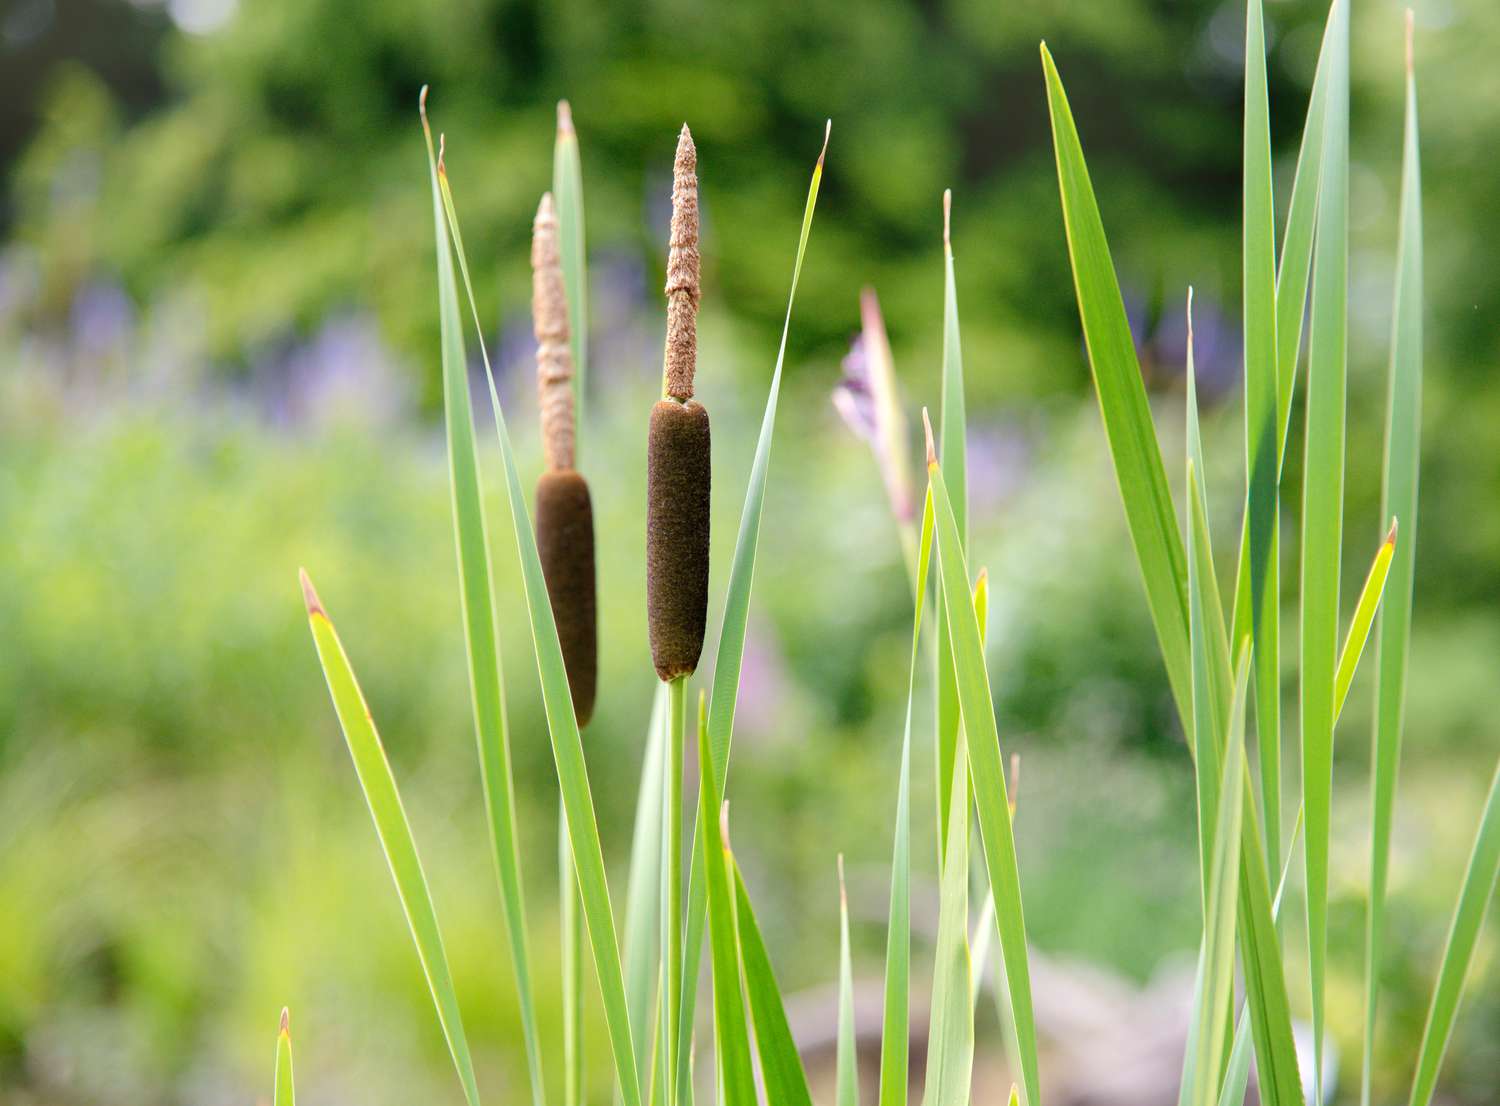 Primer plano de una planta común de espadaña con espigas en forma de salchicha sobre tallos finos y estrechos